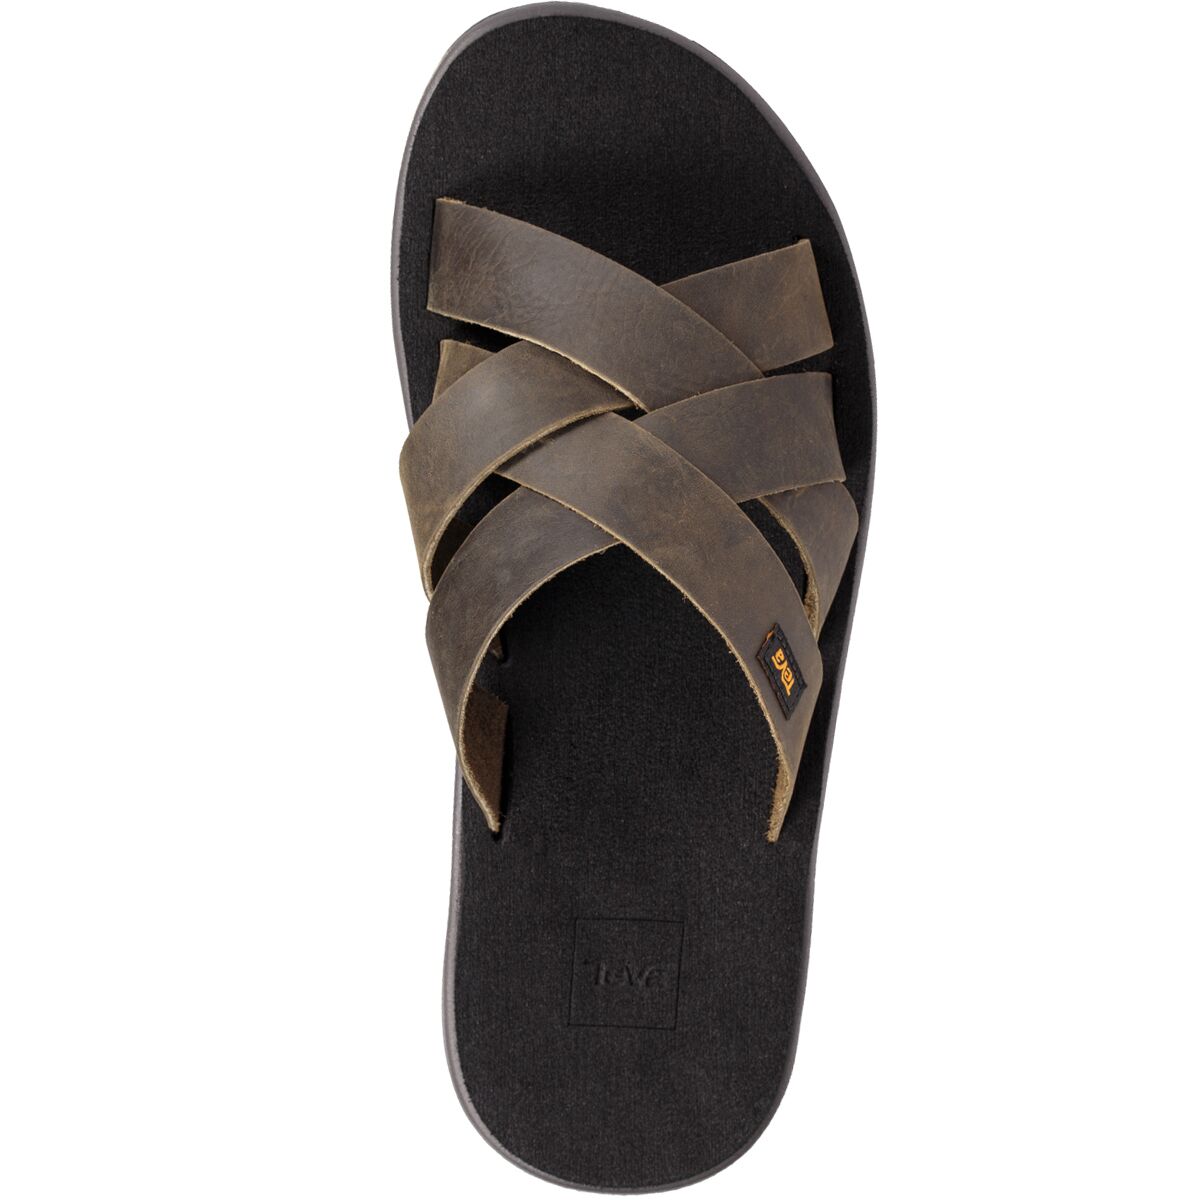 Teva Voya Leather Slide Sandal - Men's - Footwear